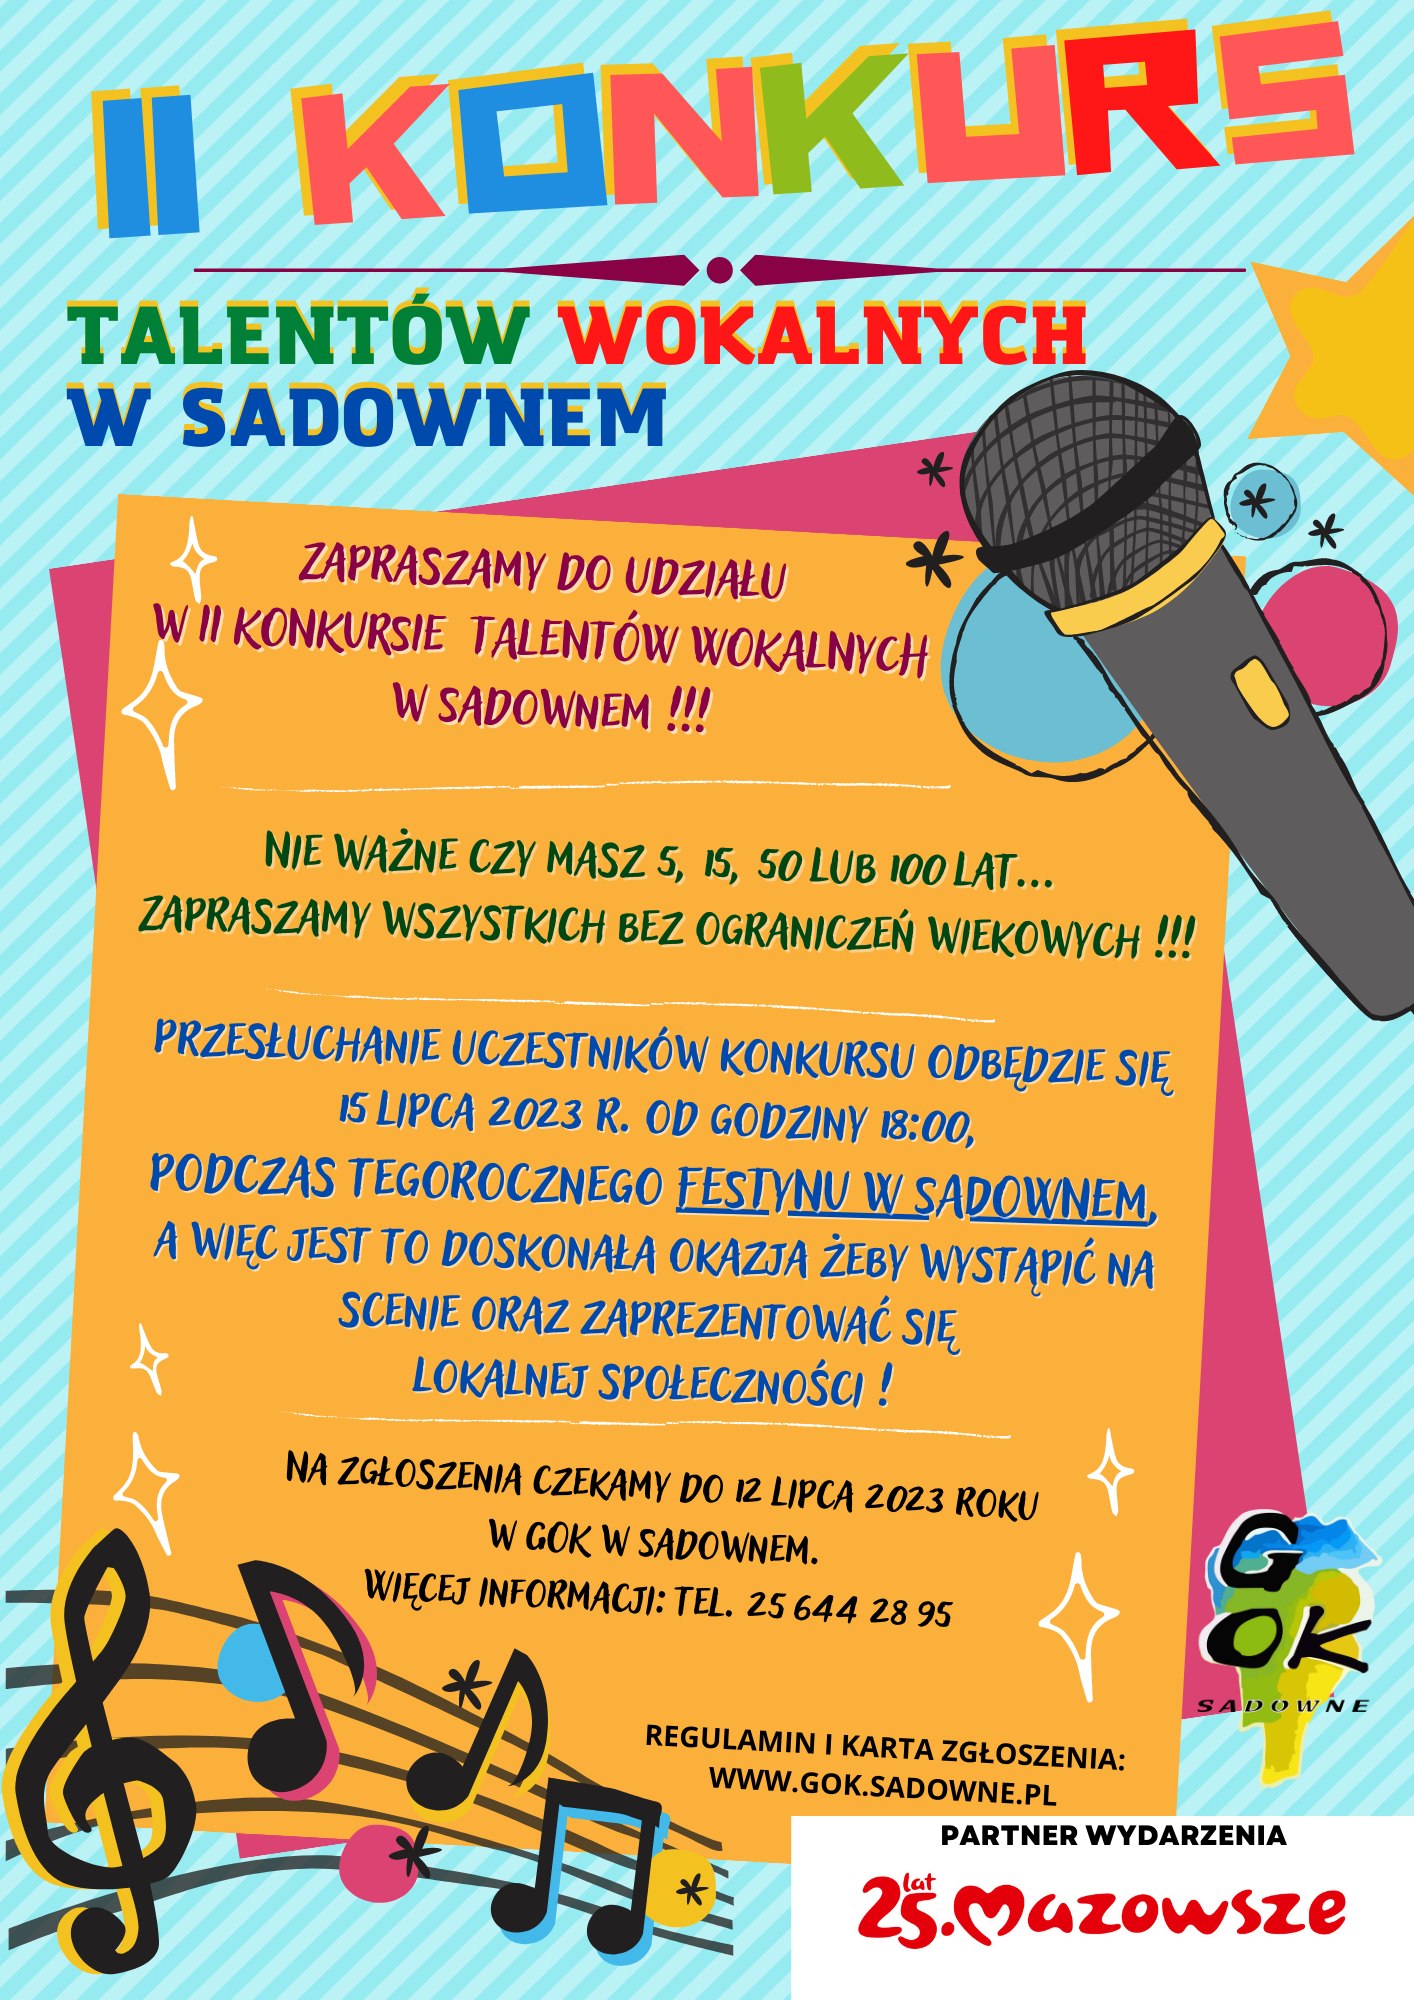 II Konkurs Talentów Wokalnych w Sadownem !!!